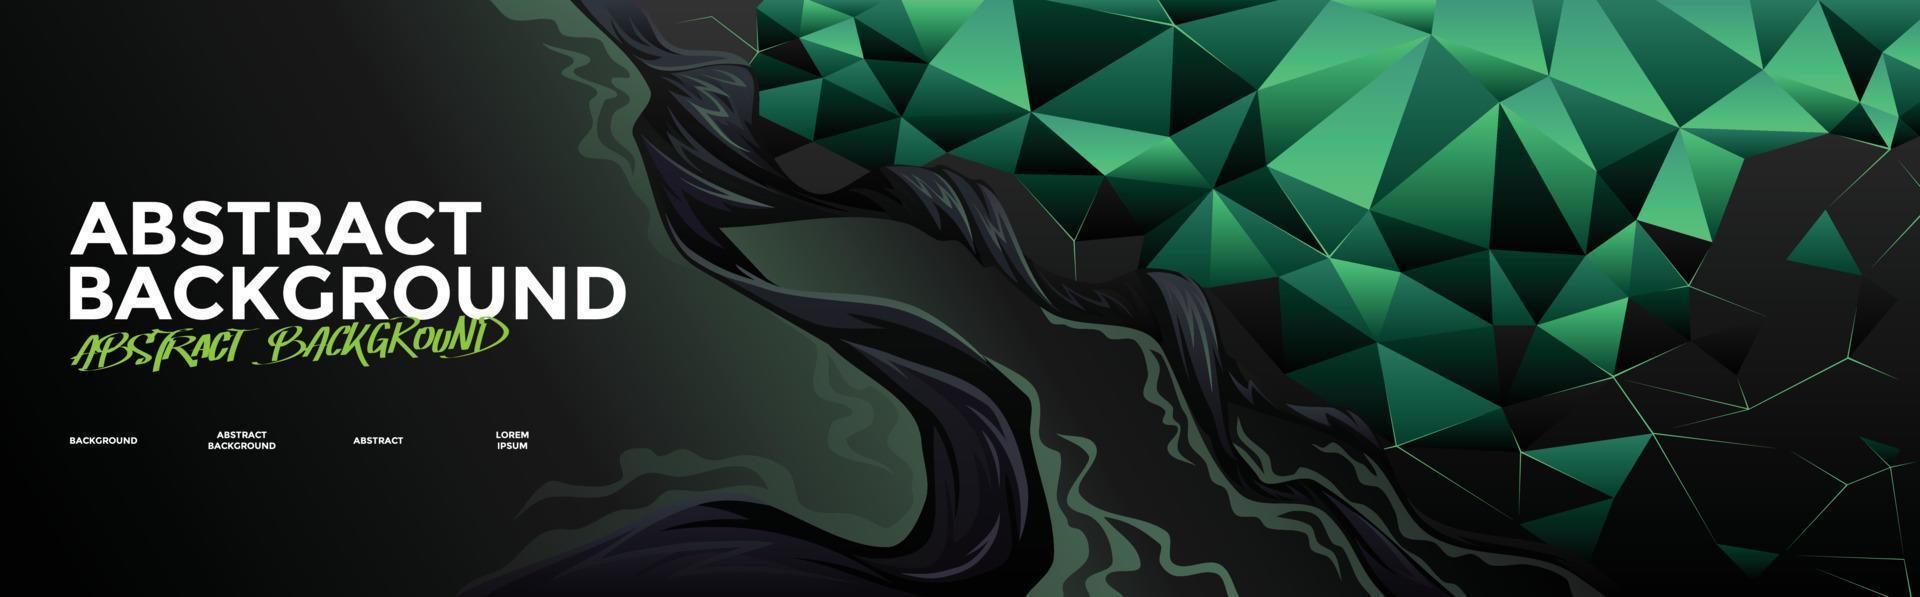 fondo abstracto negro y verde con elementos de diamante vector